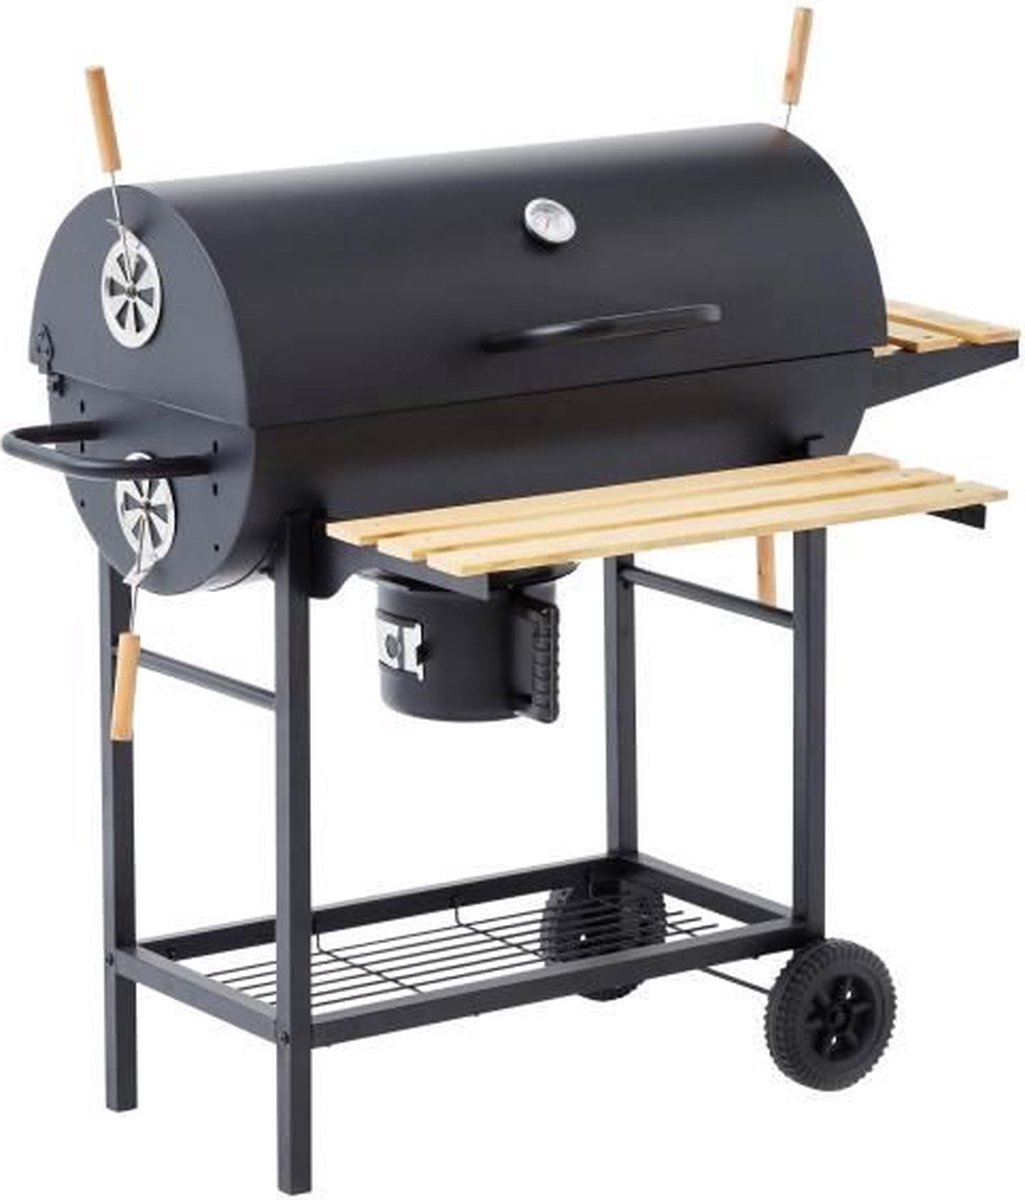 sweeek - Barbecue charbon de bois Serge noir, fumoir, Smoker américain,  récupérateur de cendre, tablettes, roulettes